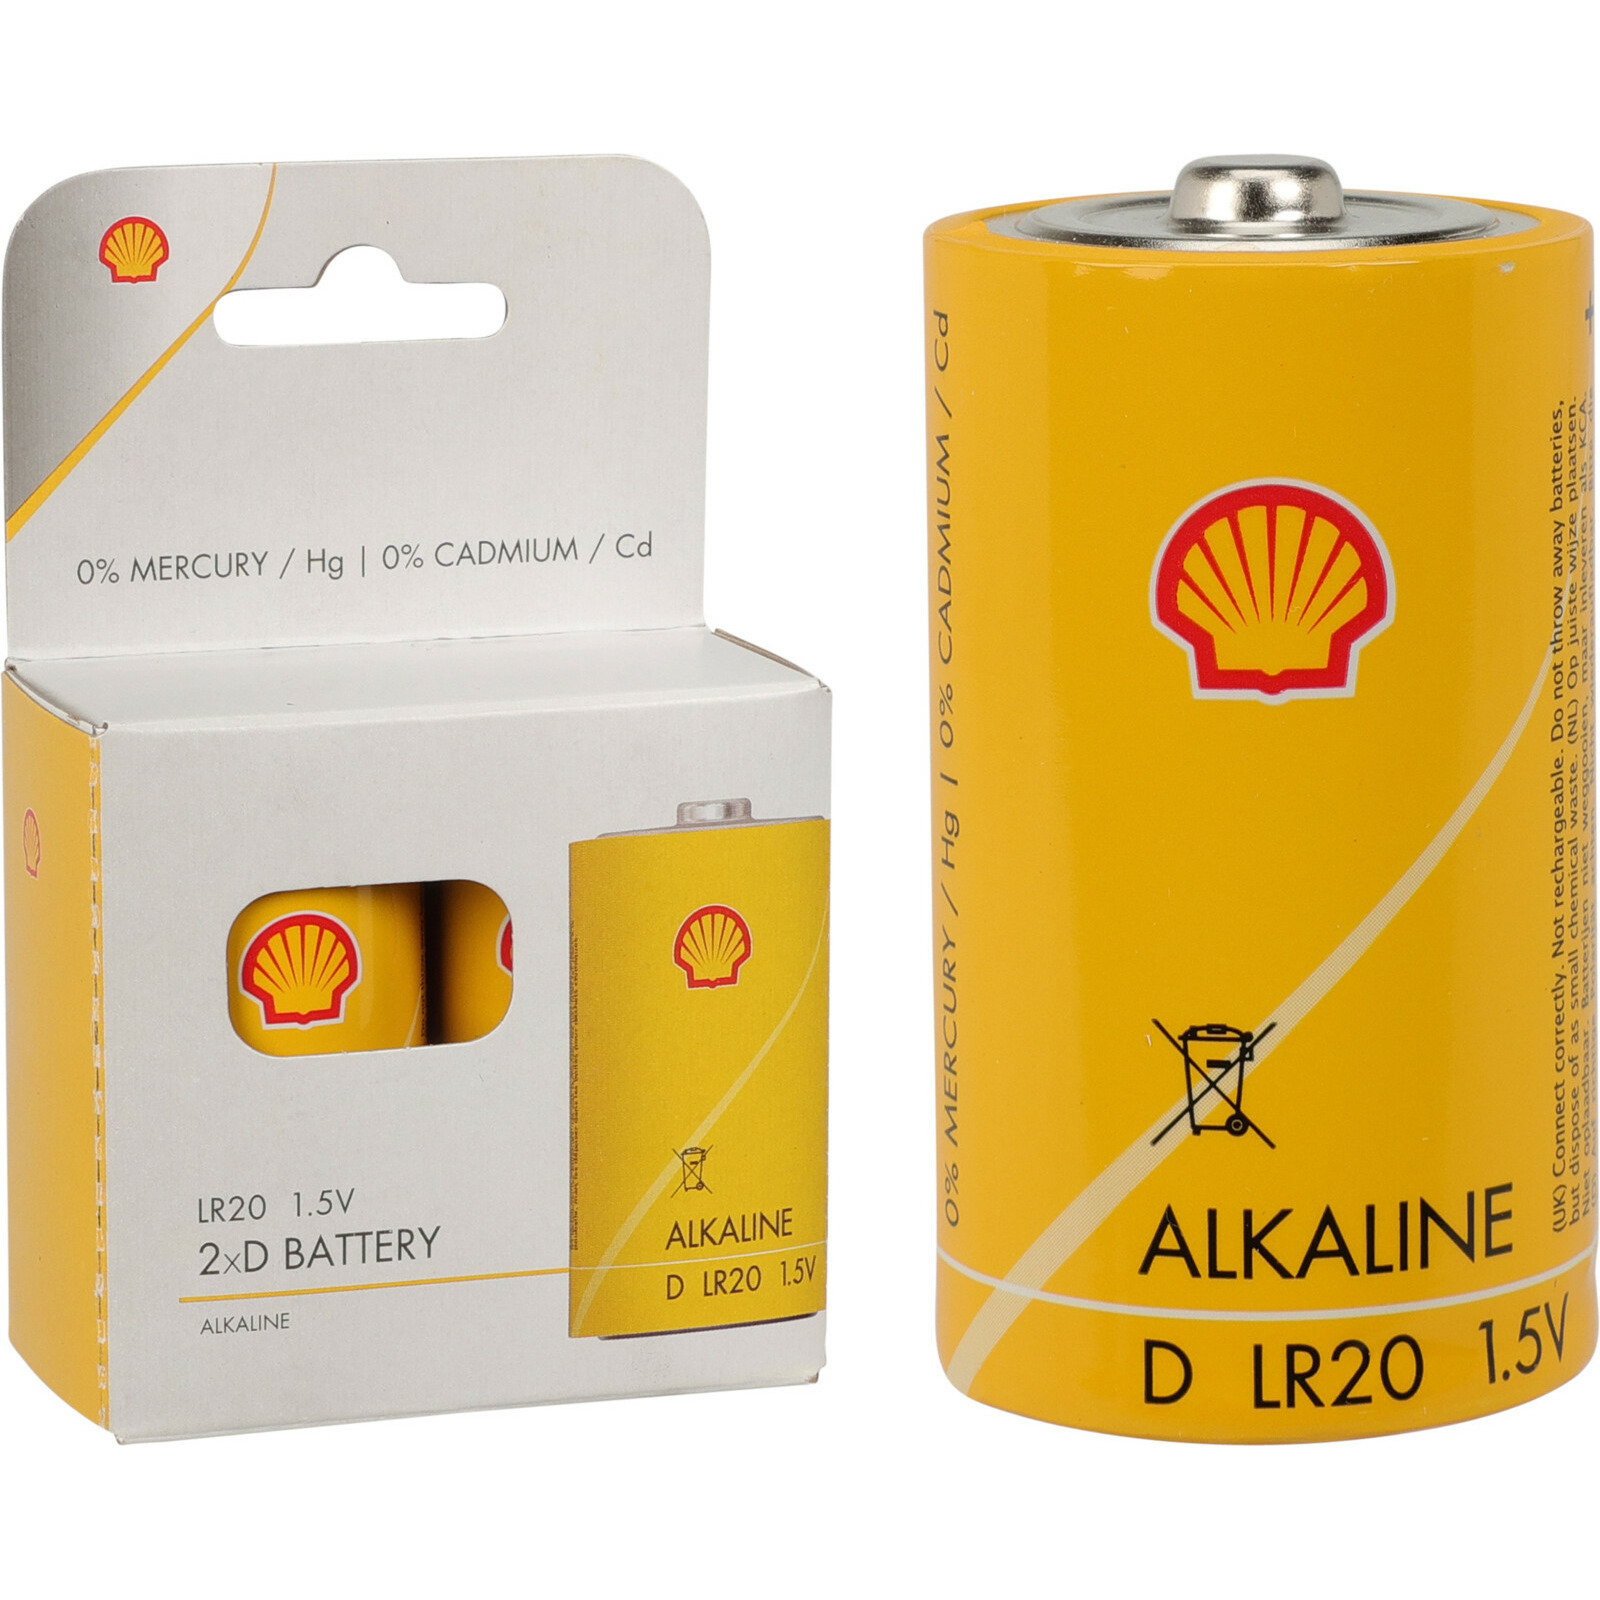 Shell Batterijen type LR20 2x stuks Alkaline Longlife